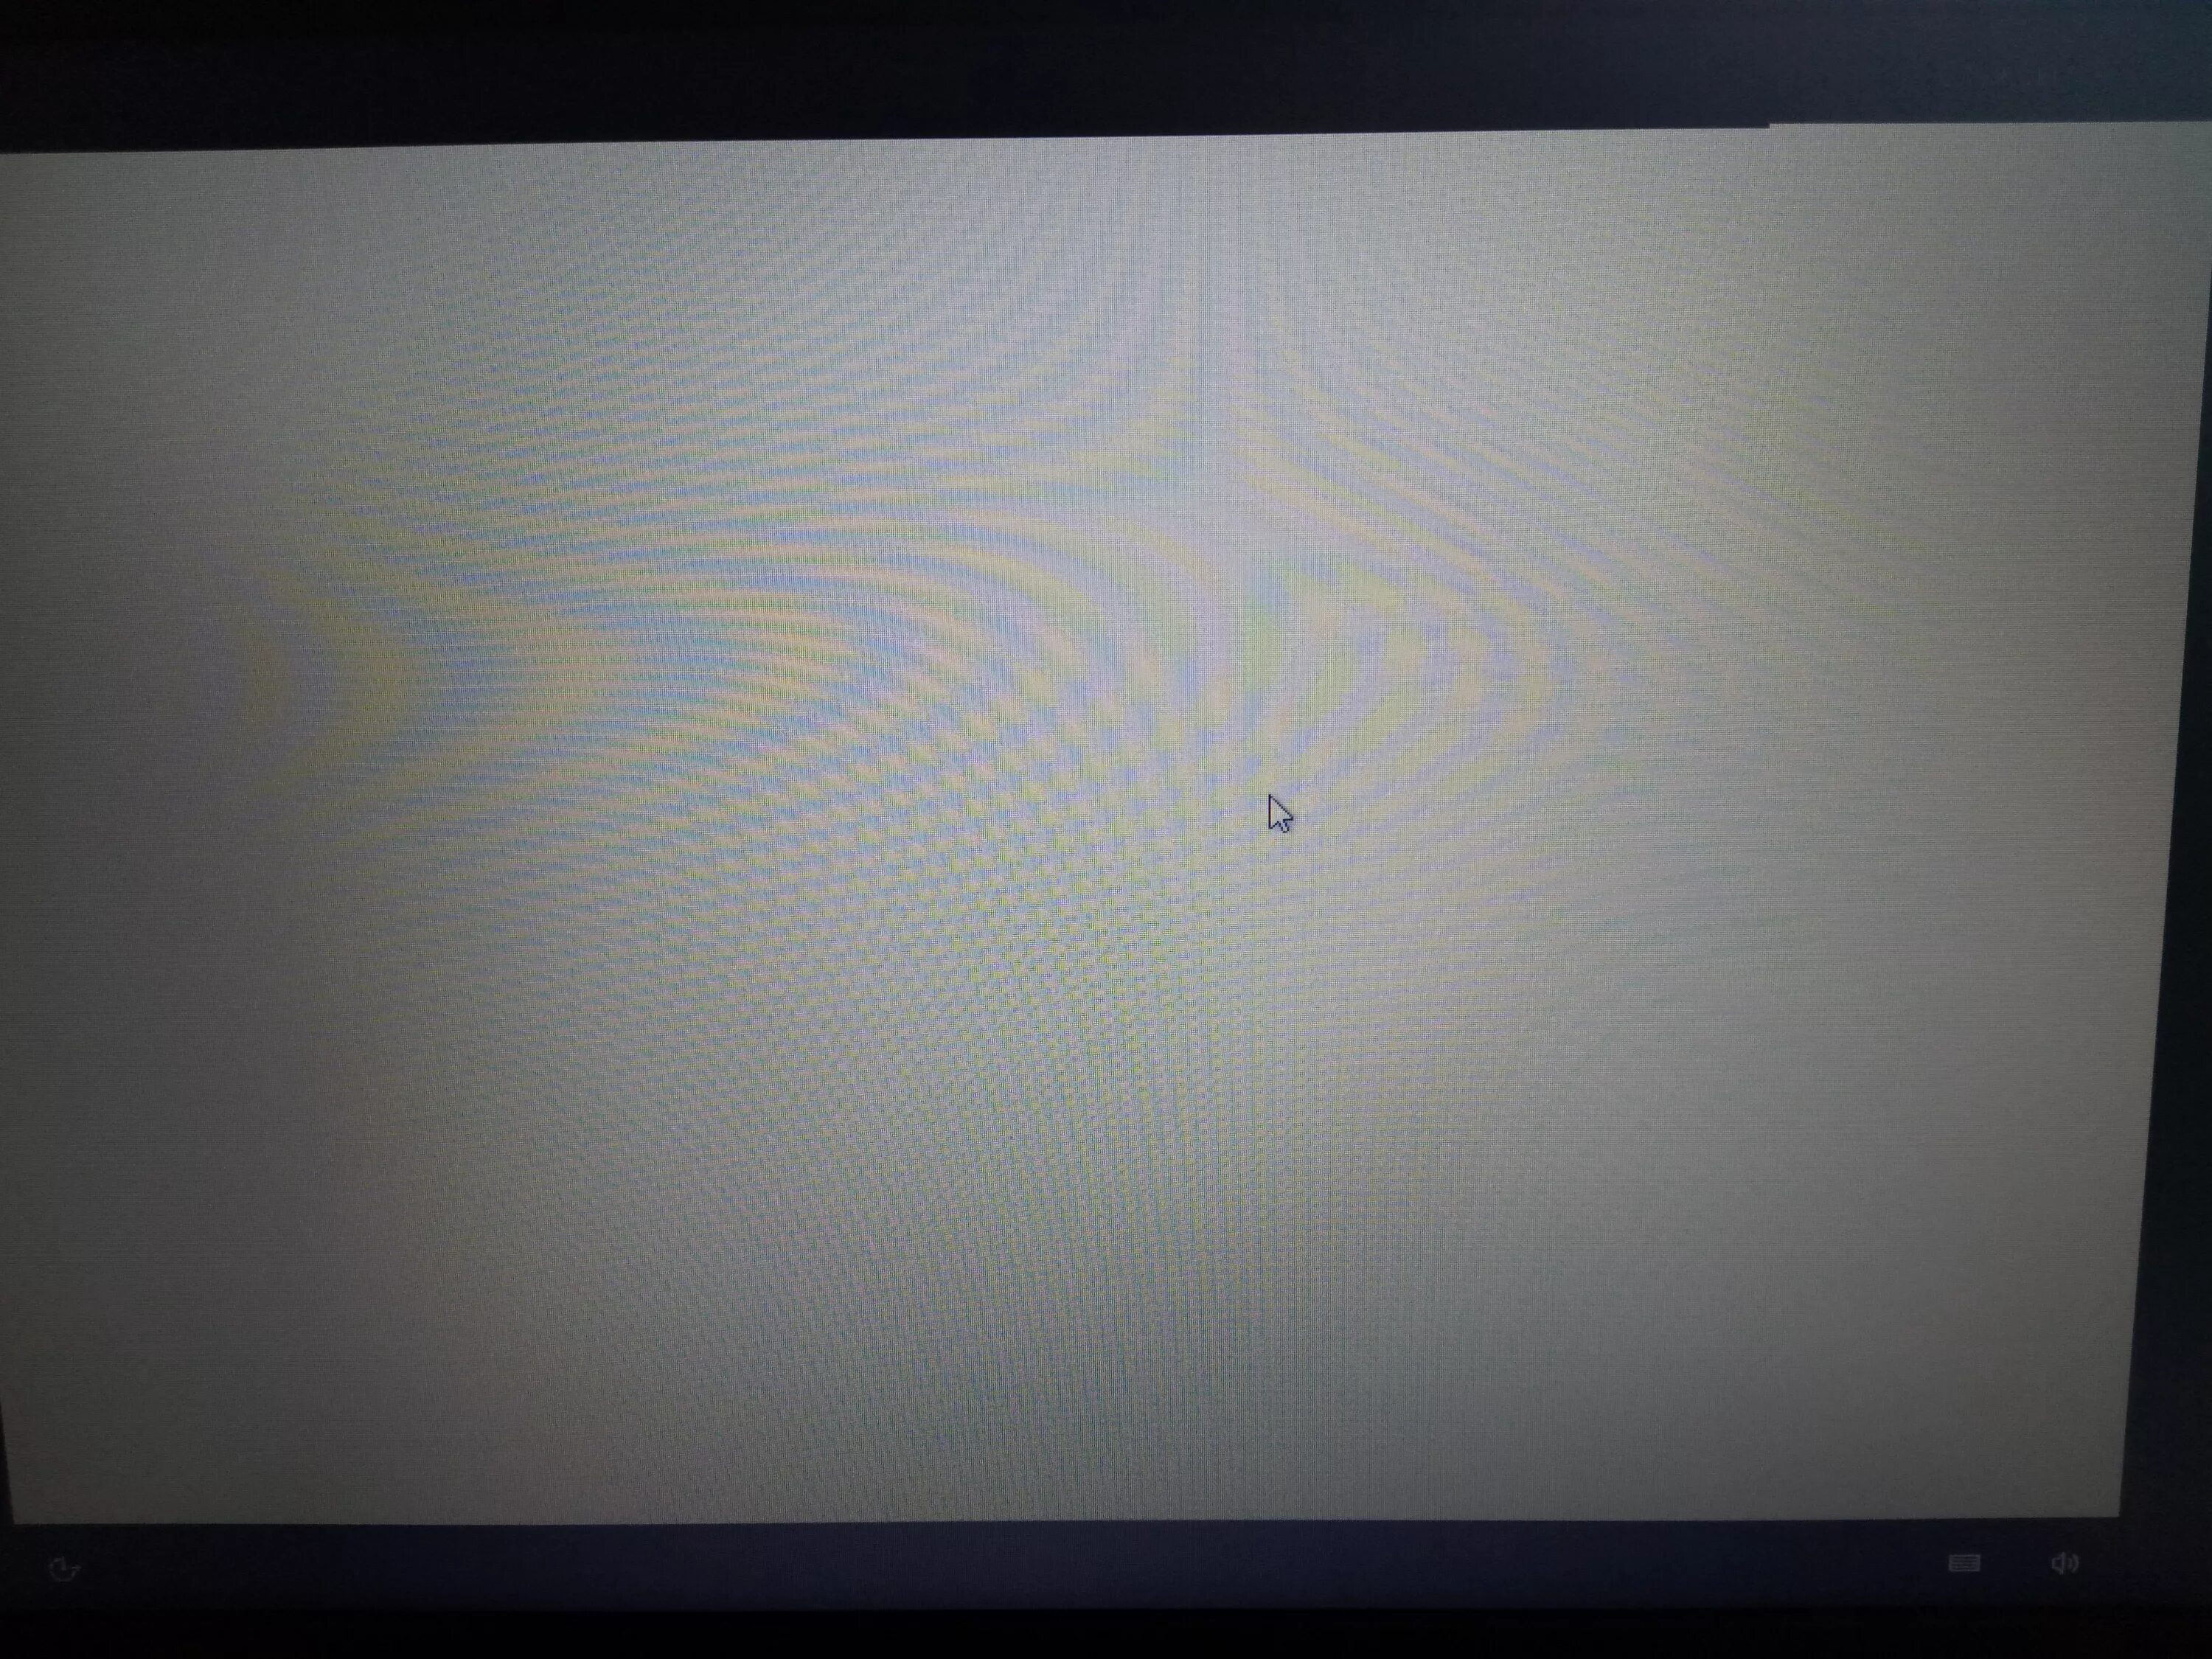 Tl15h102b белый экран. Б5дый экран. Белый экрае н. Очень яркий белый экран.